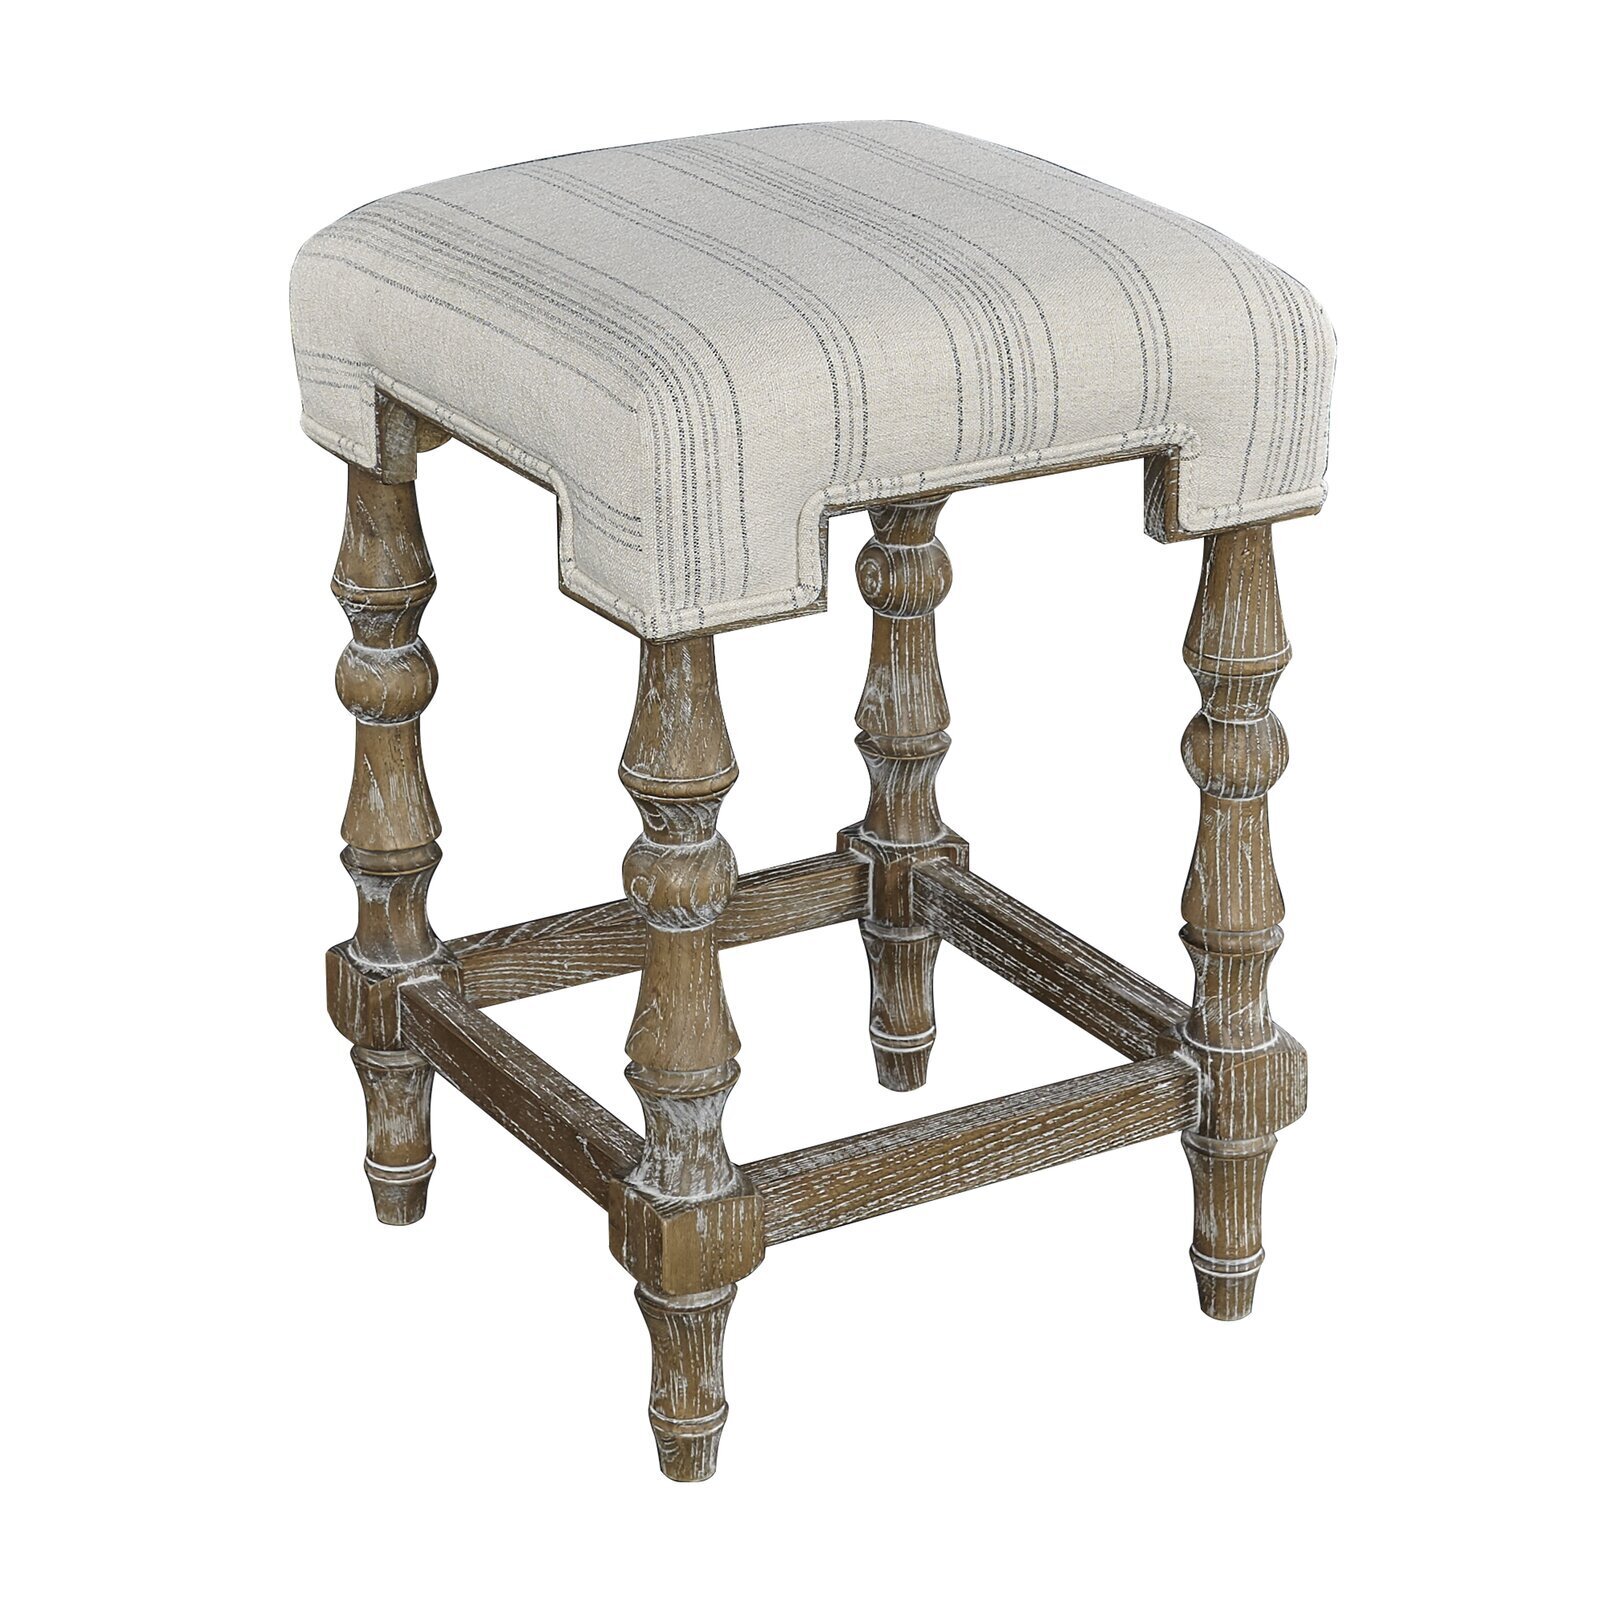 Upholstered square bar stool